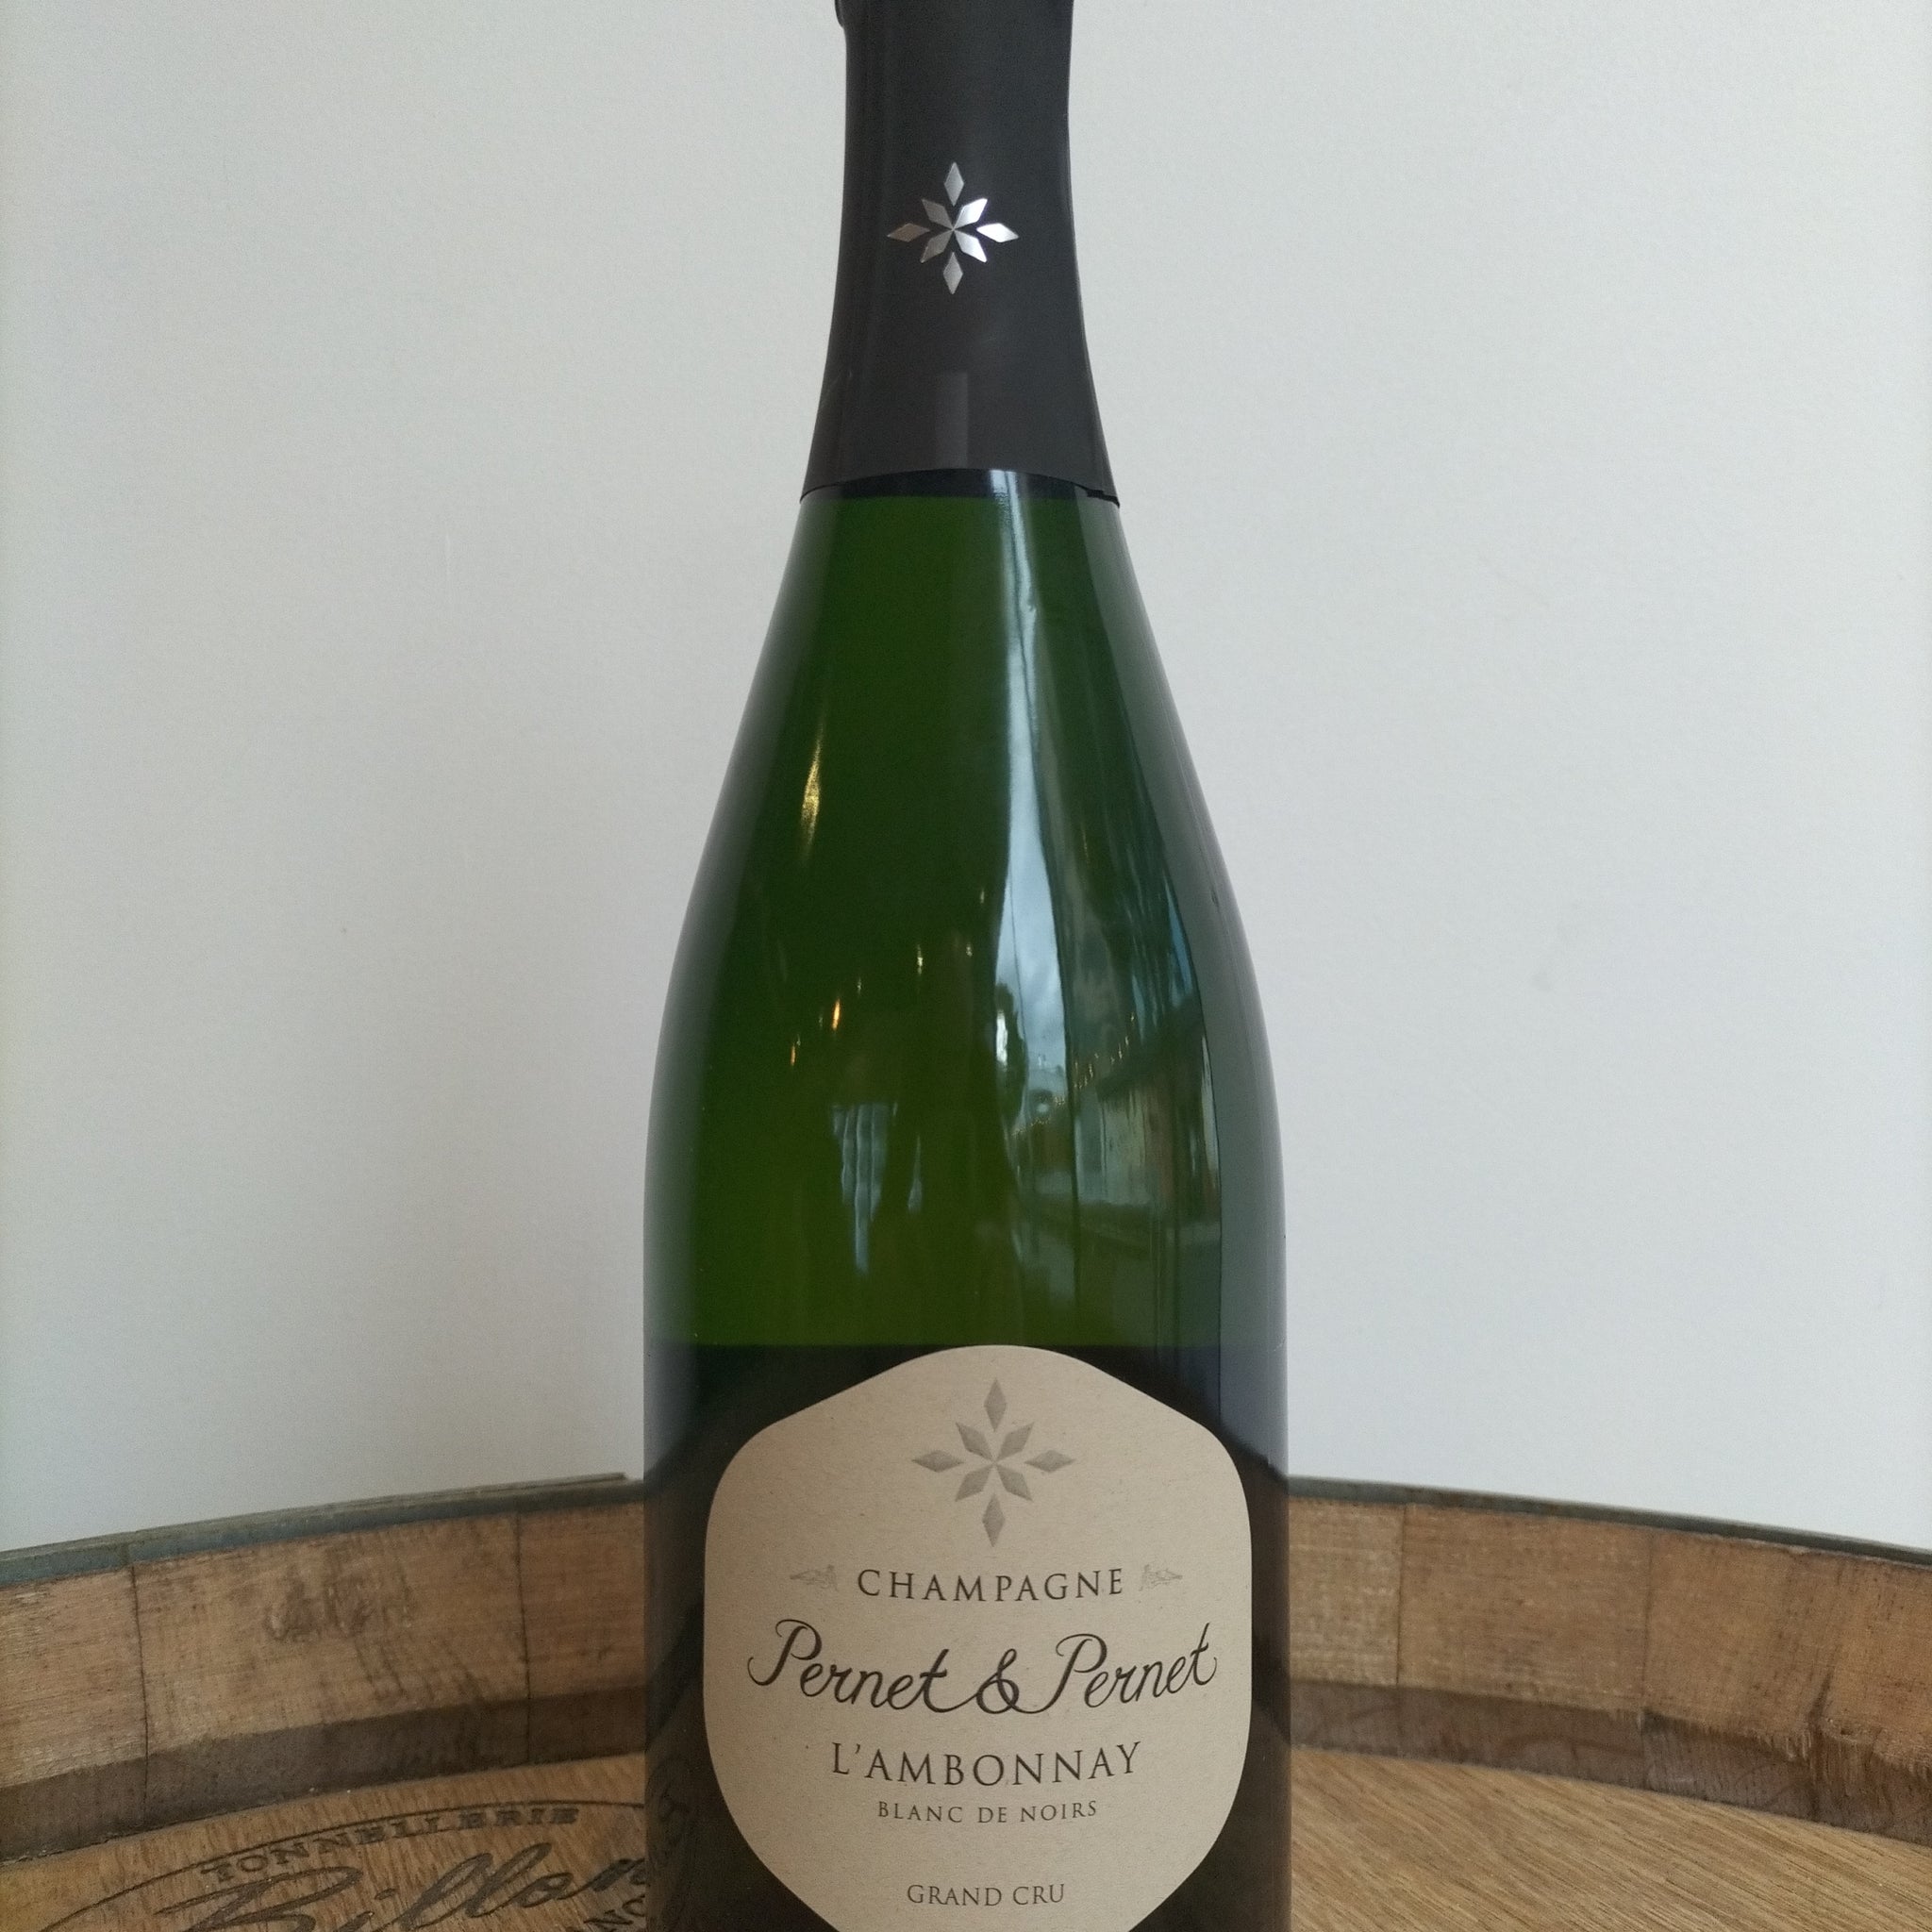 2018 Champagne Pernet et Pernet l'Ambonnay Blanc de Noirs Grand Cru